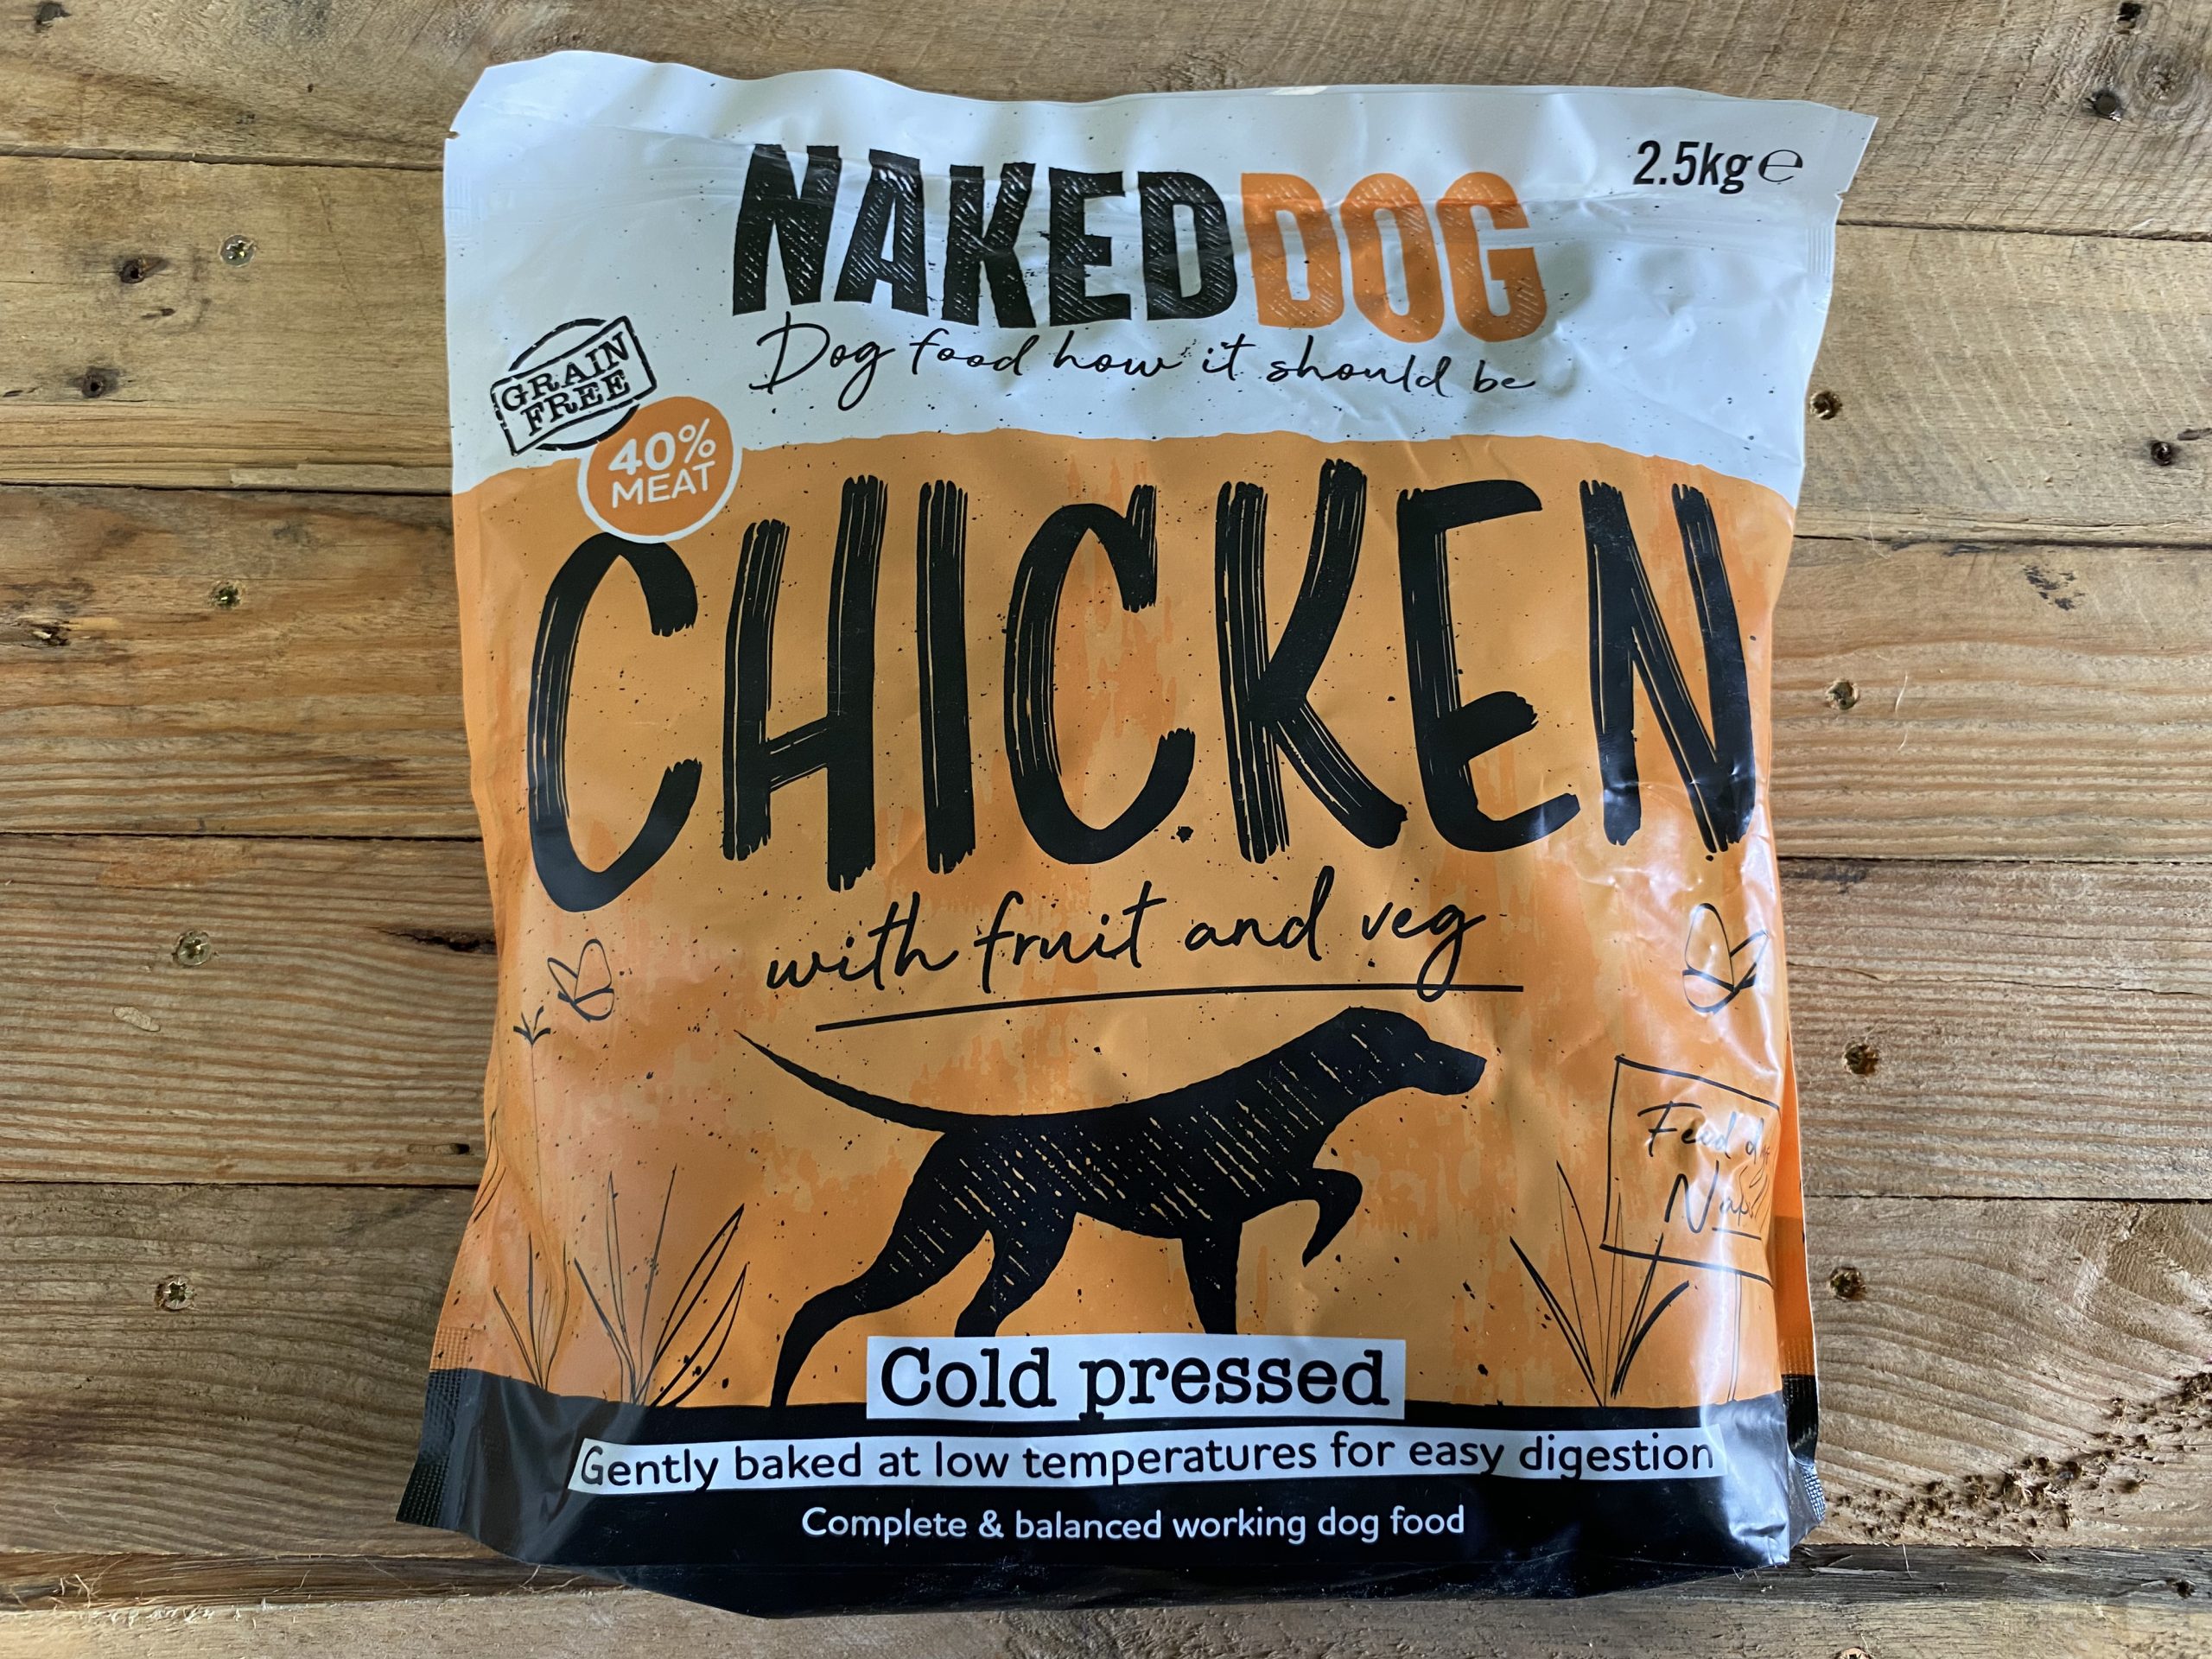 Naked Dog Chicken Cold Pressed – 2.5kg